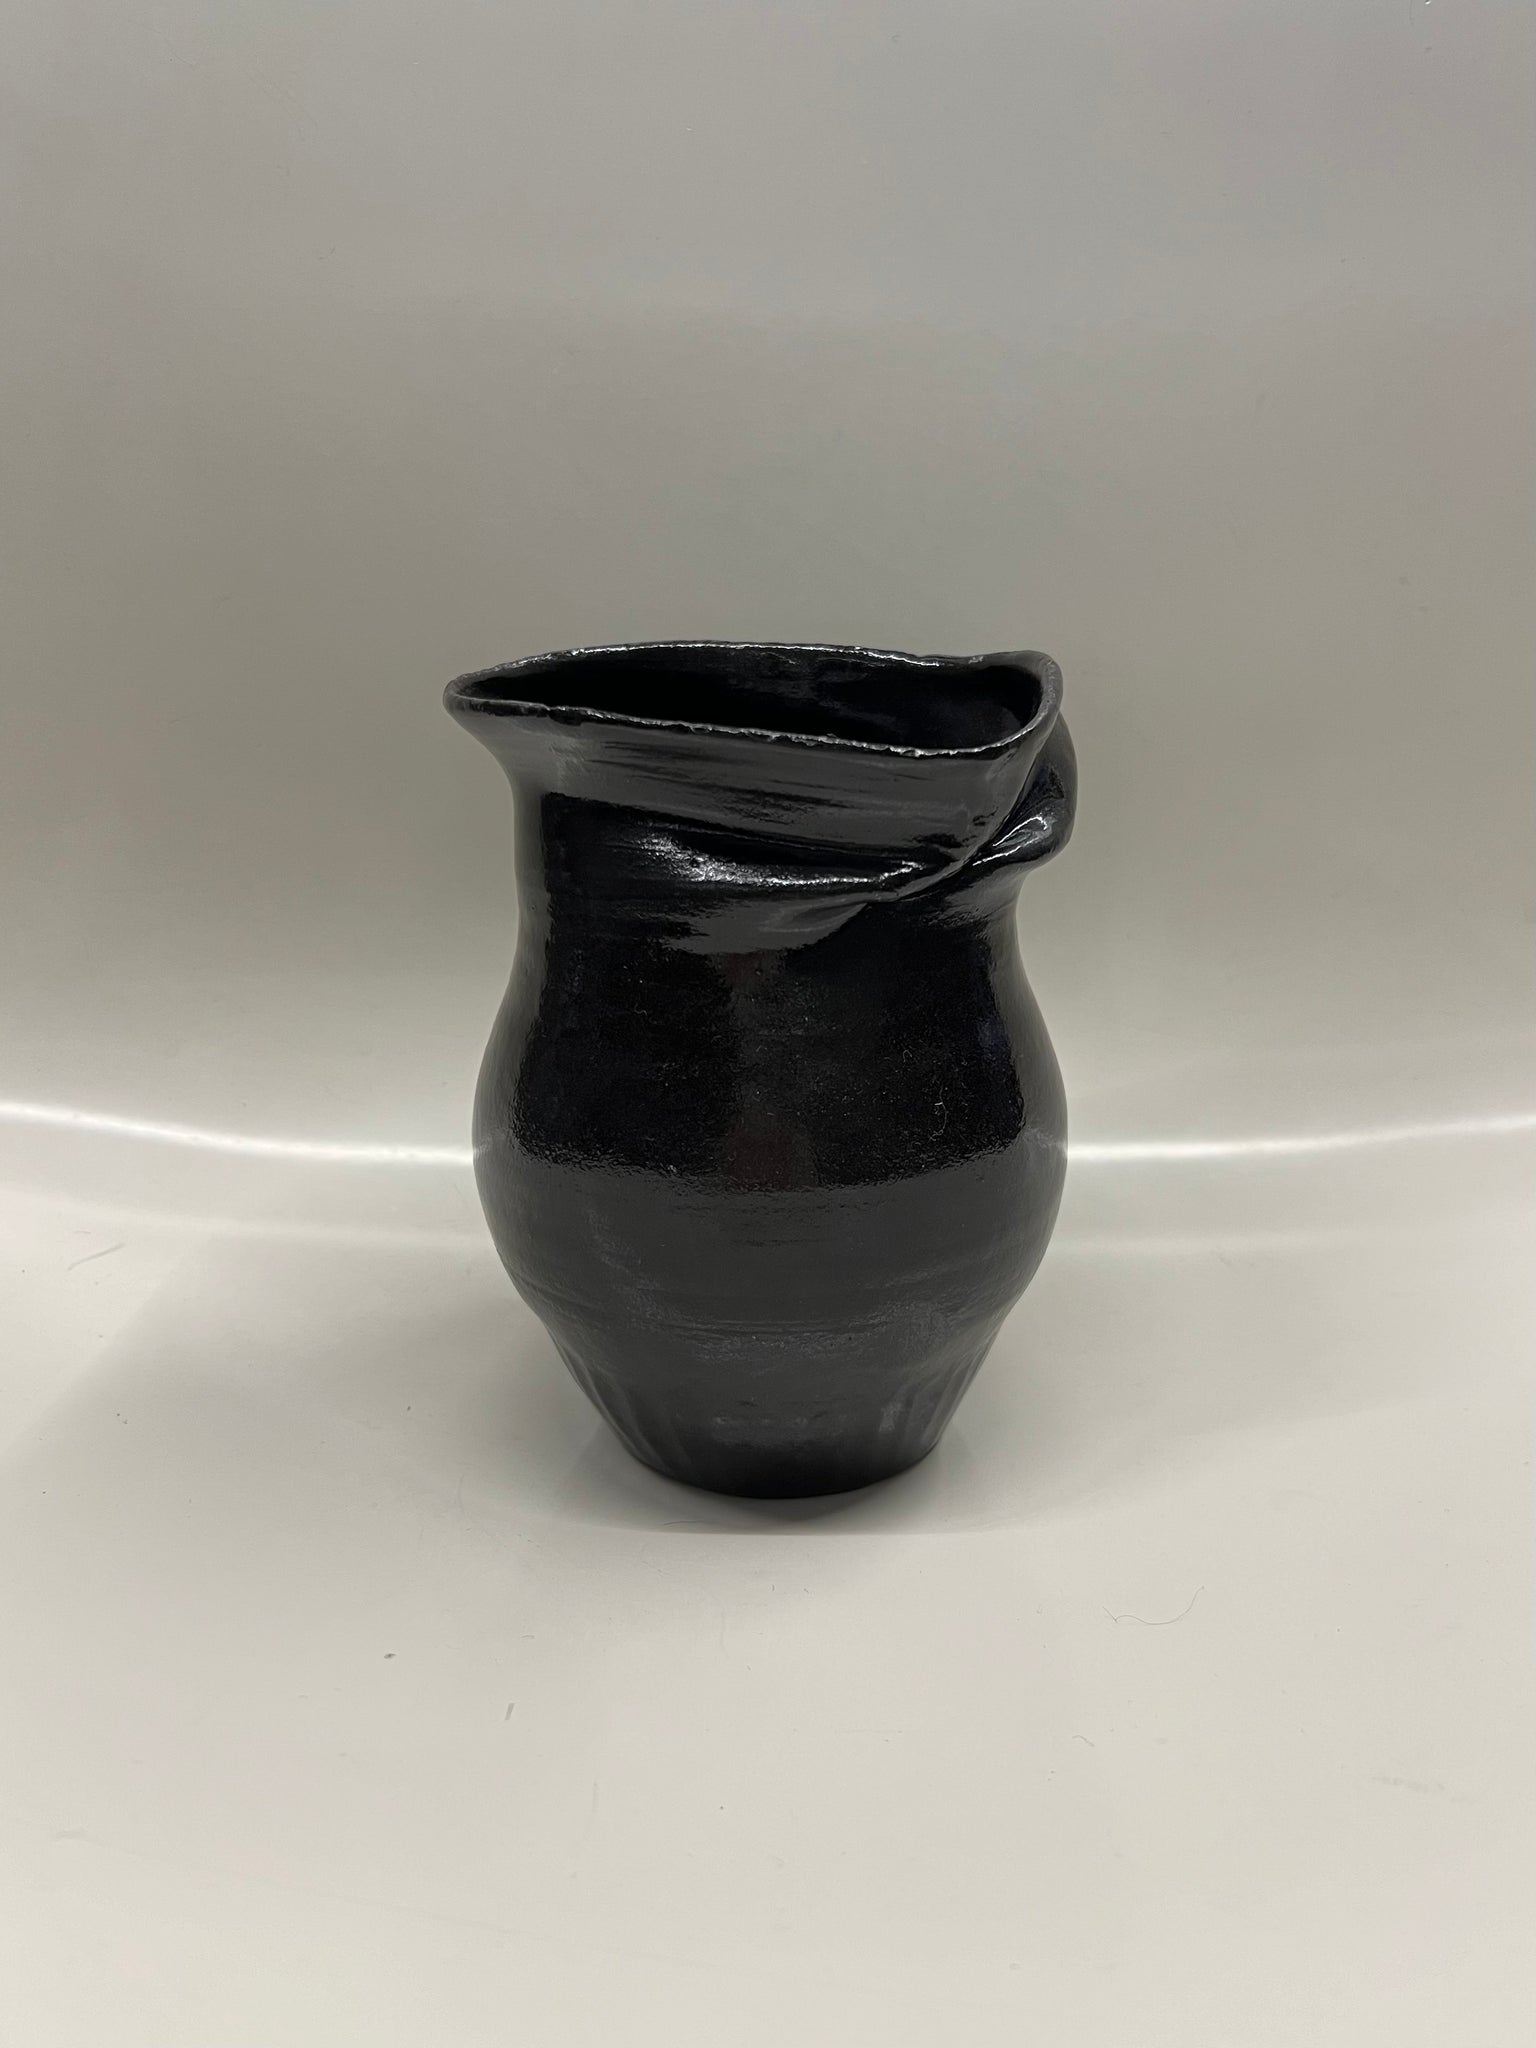 Deformed glazed vase in black by Jimu Kobayashi